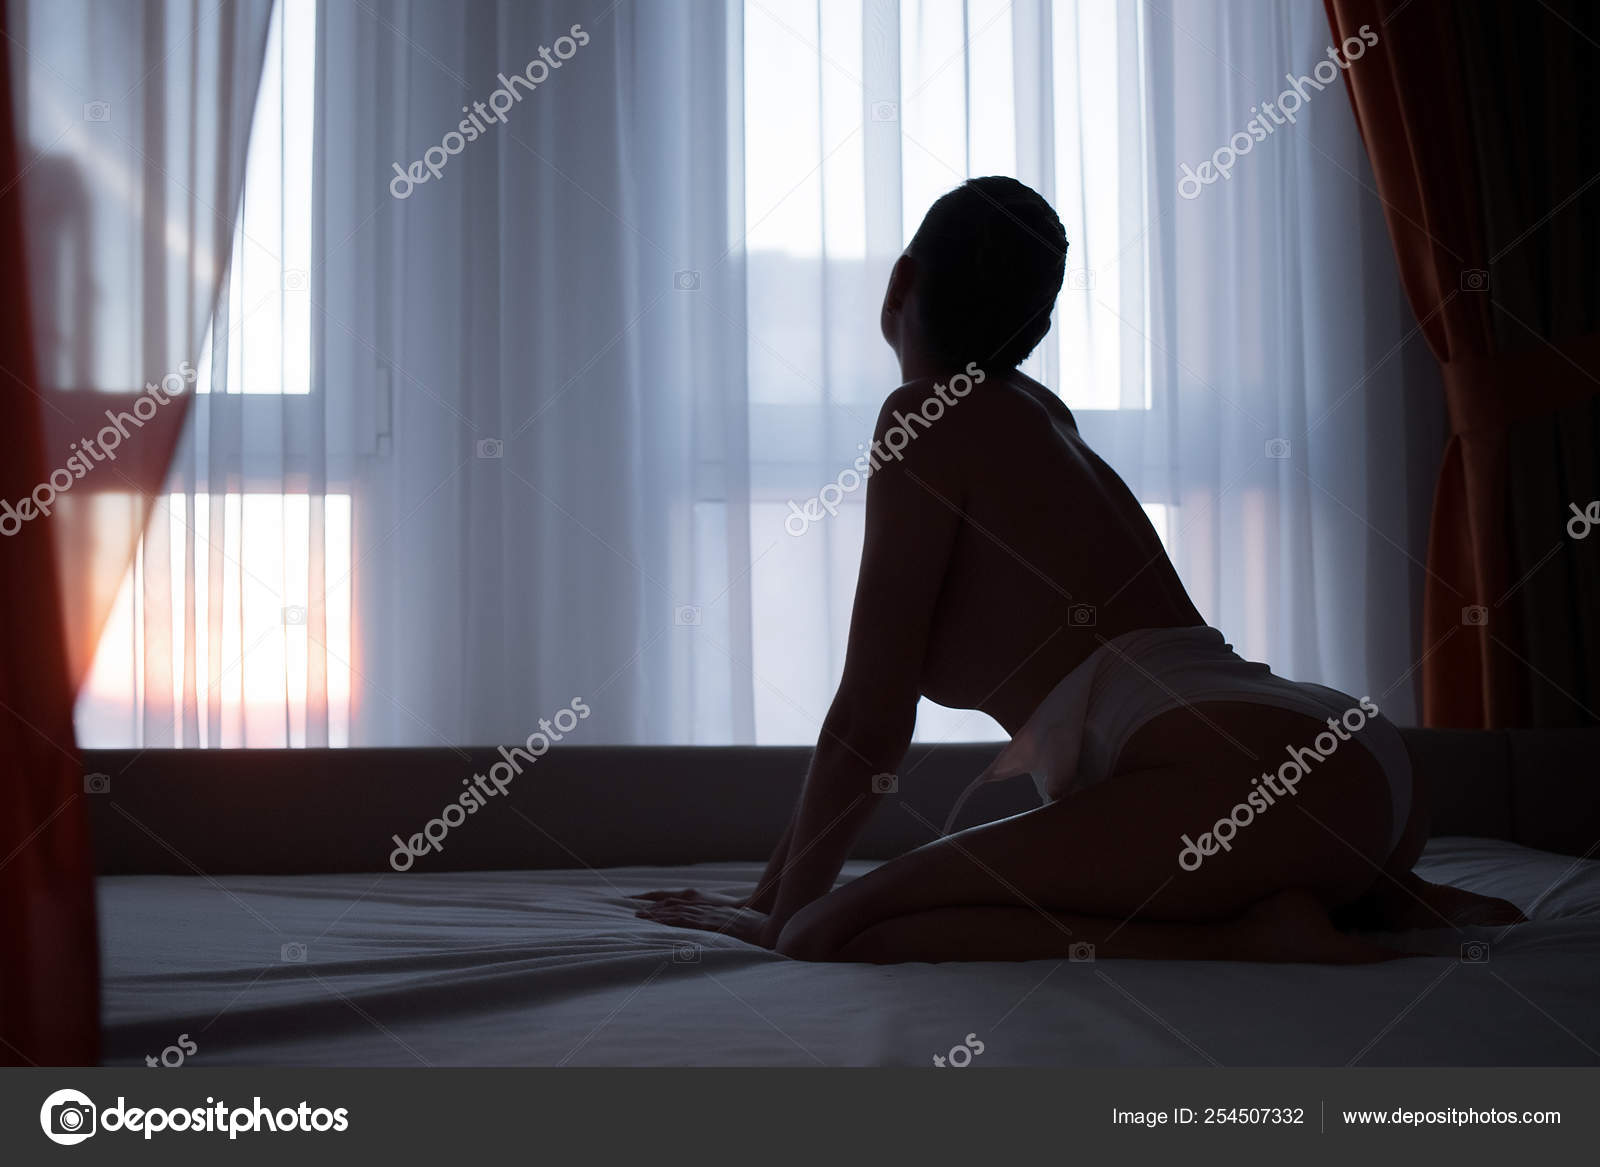 https://st4n.depositphotos.com/5034975/25450/i/1600/depositphotos_254507332-stock-photo-young-sensual-naked-woman-posing.jpg